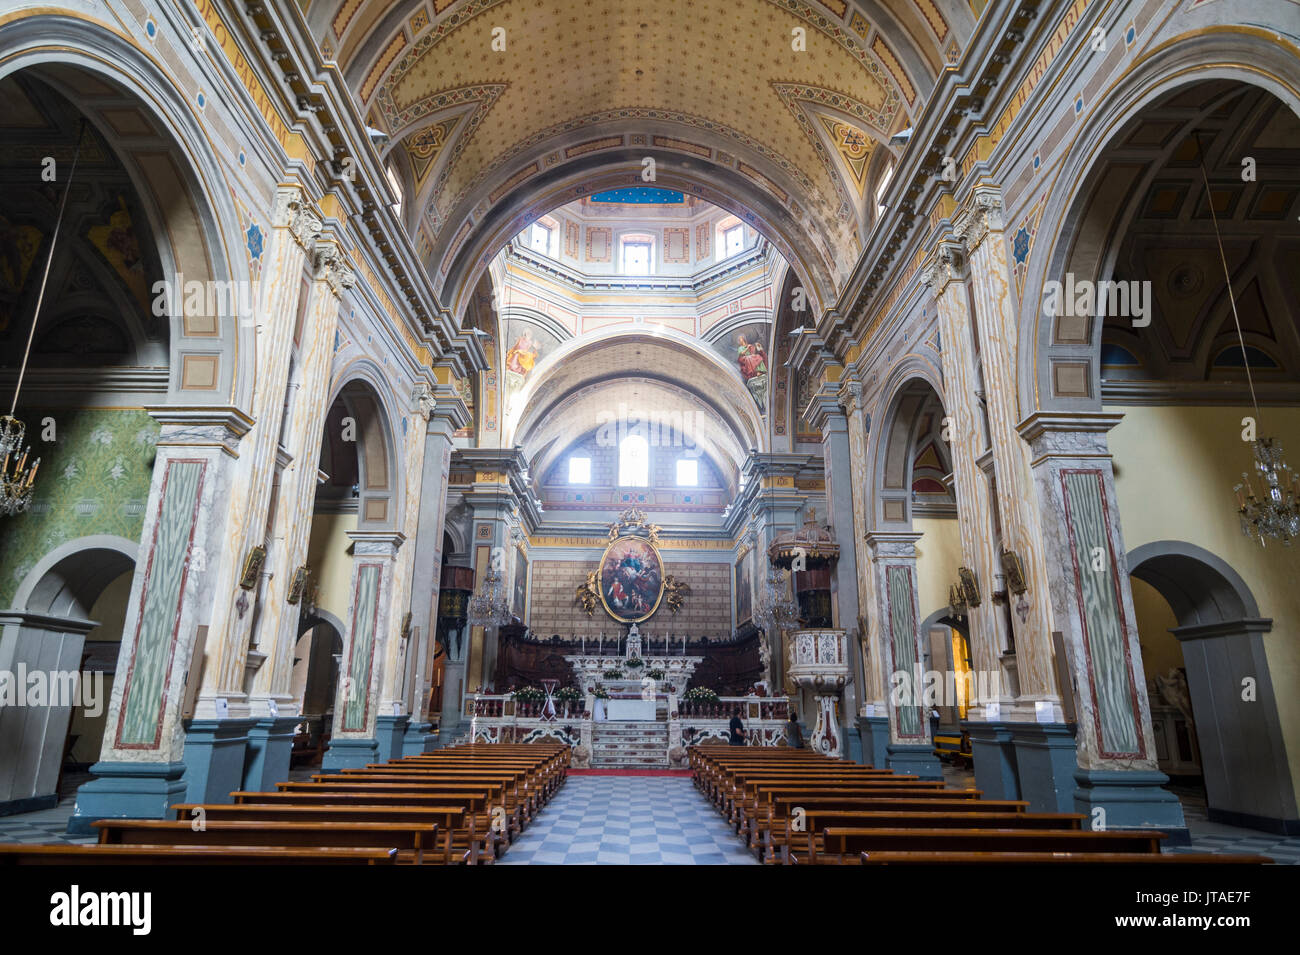 Intérieur de la cathédrale d'Oristano, Oristano, Sardaigne, Italie, Europe Banque D'Images